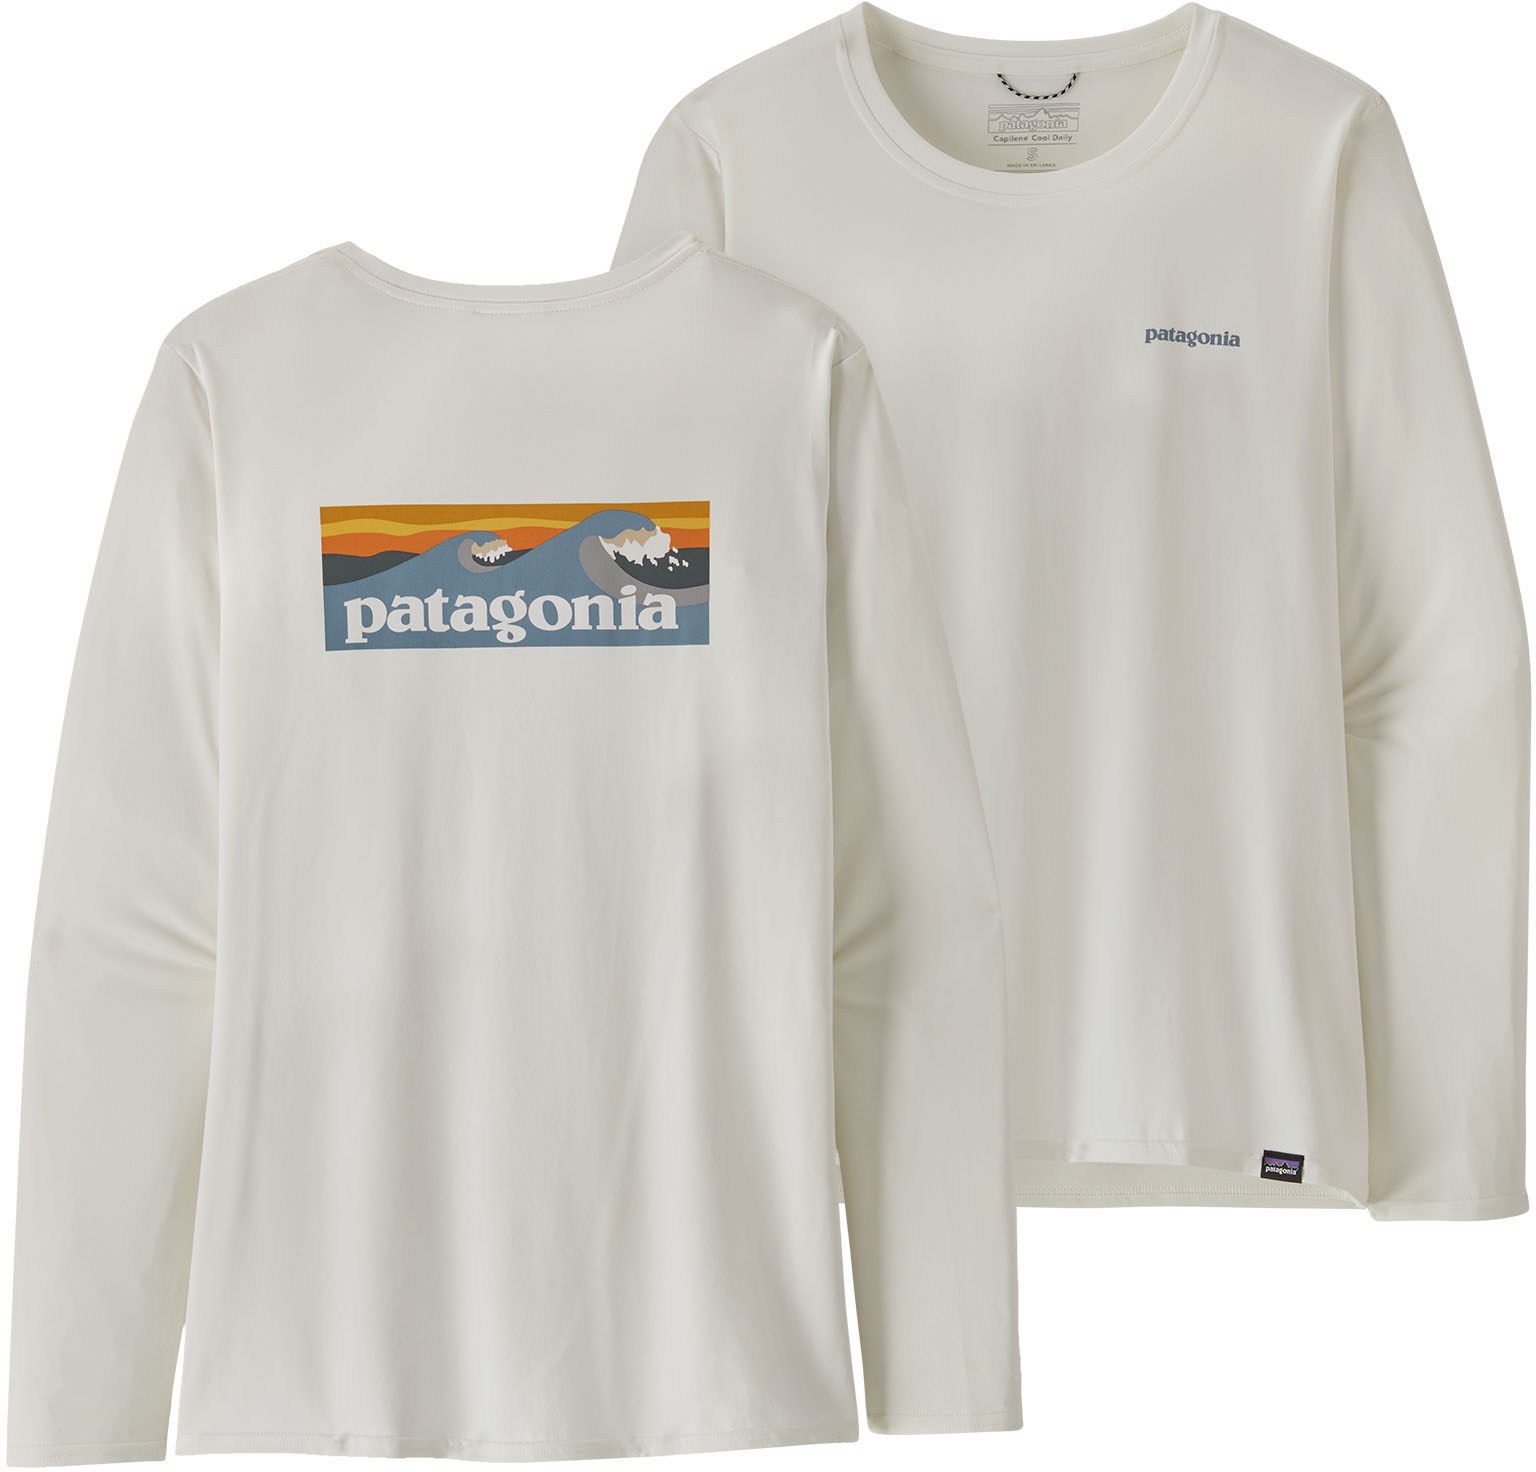 Повседневная рубашка Capilene Cool с длинными рукавами и рисунком — женская Patagonia, белый повседневная рубашка с длинными рукавами capilene cool – мужская patagonia цвет feather grey